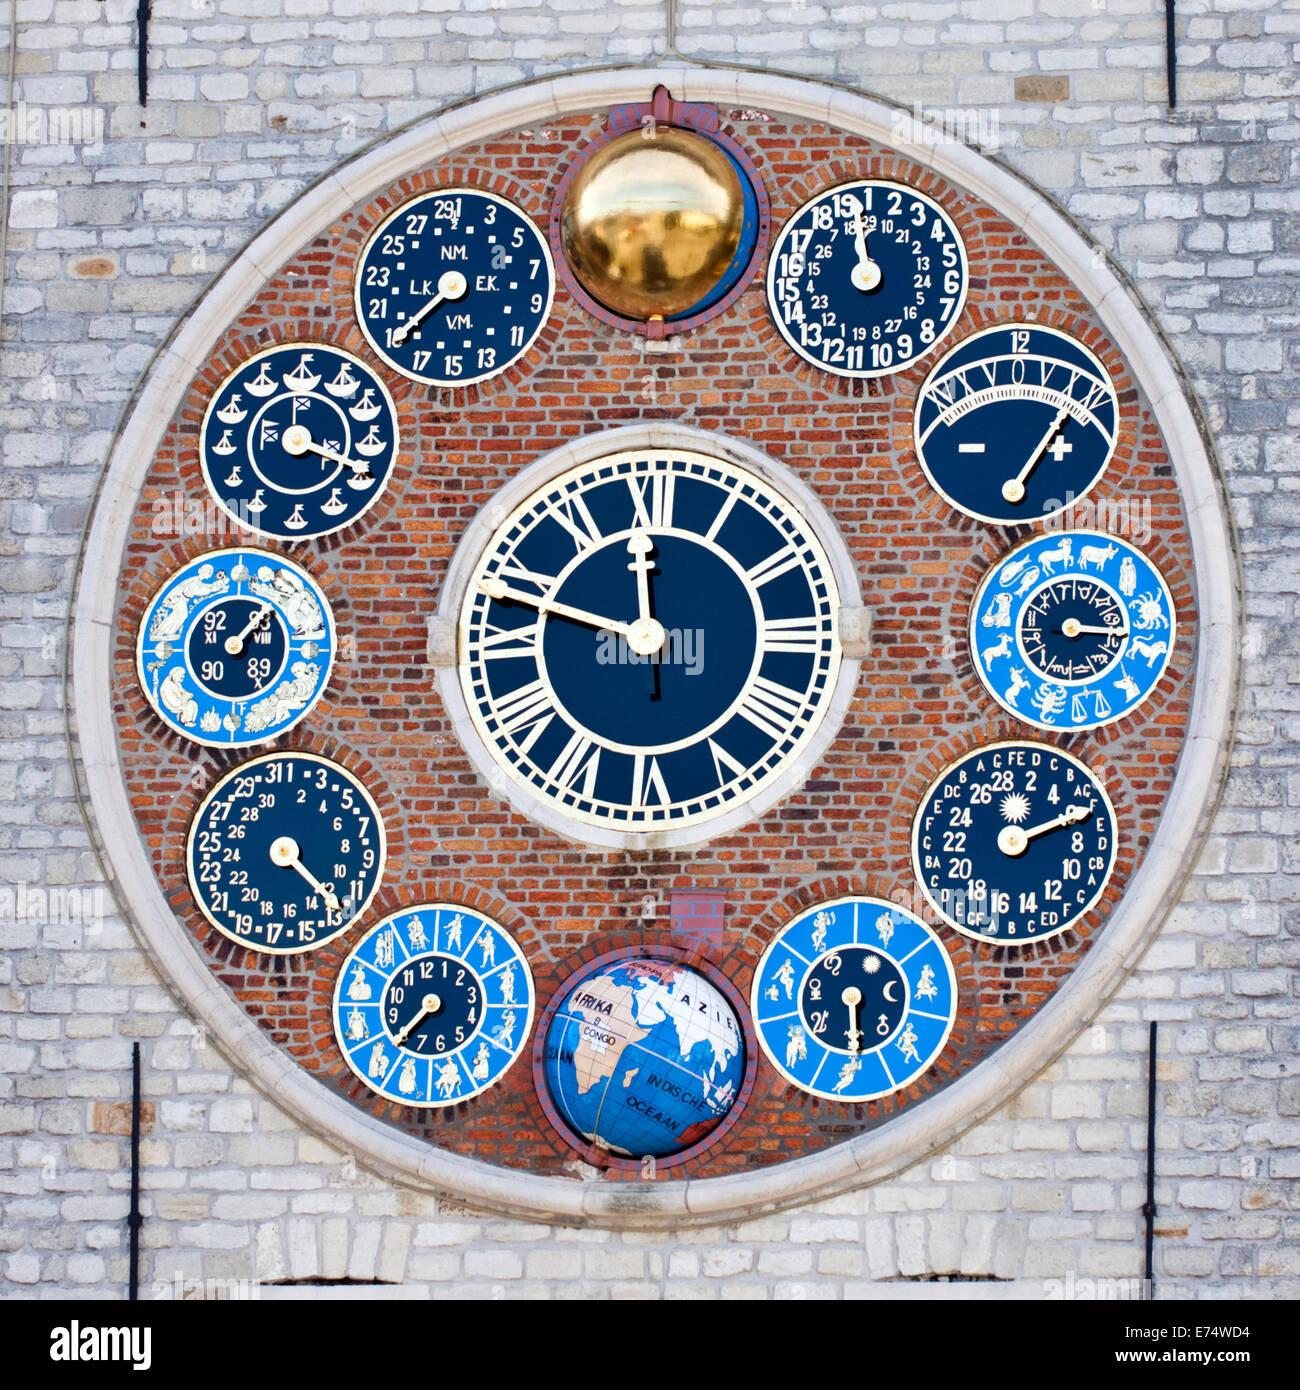 Il Giubileo o centenario orologio sul frontale della Zimmer torre in Lier, Belgio - uno dei più fantastici orologi nel mondo. Foto Stock